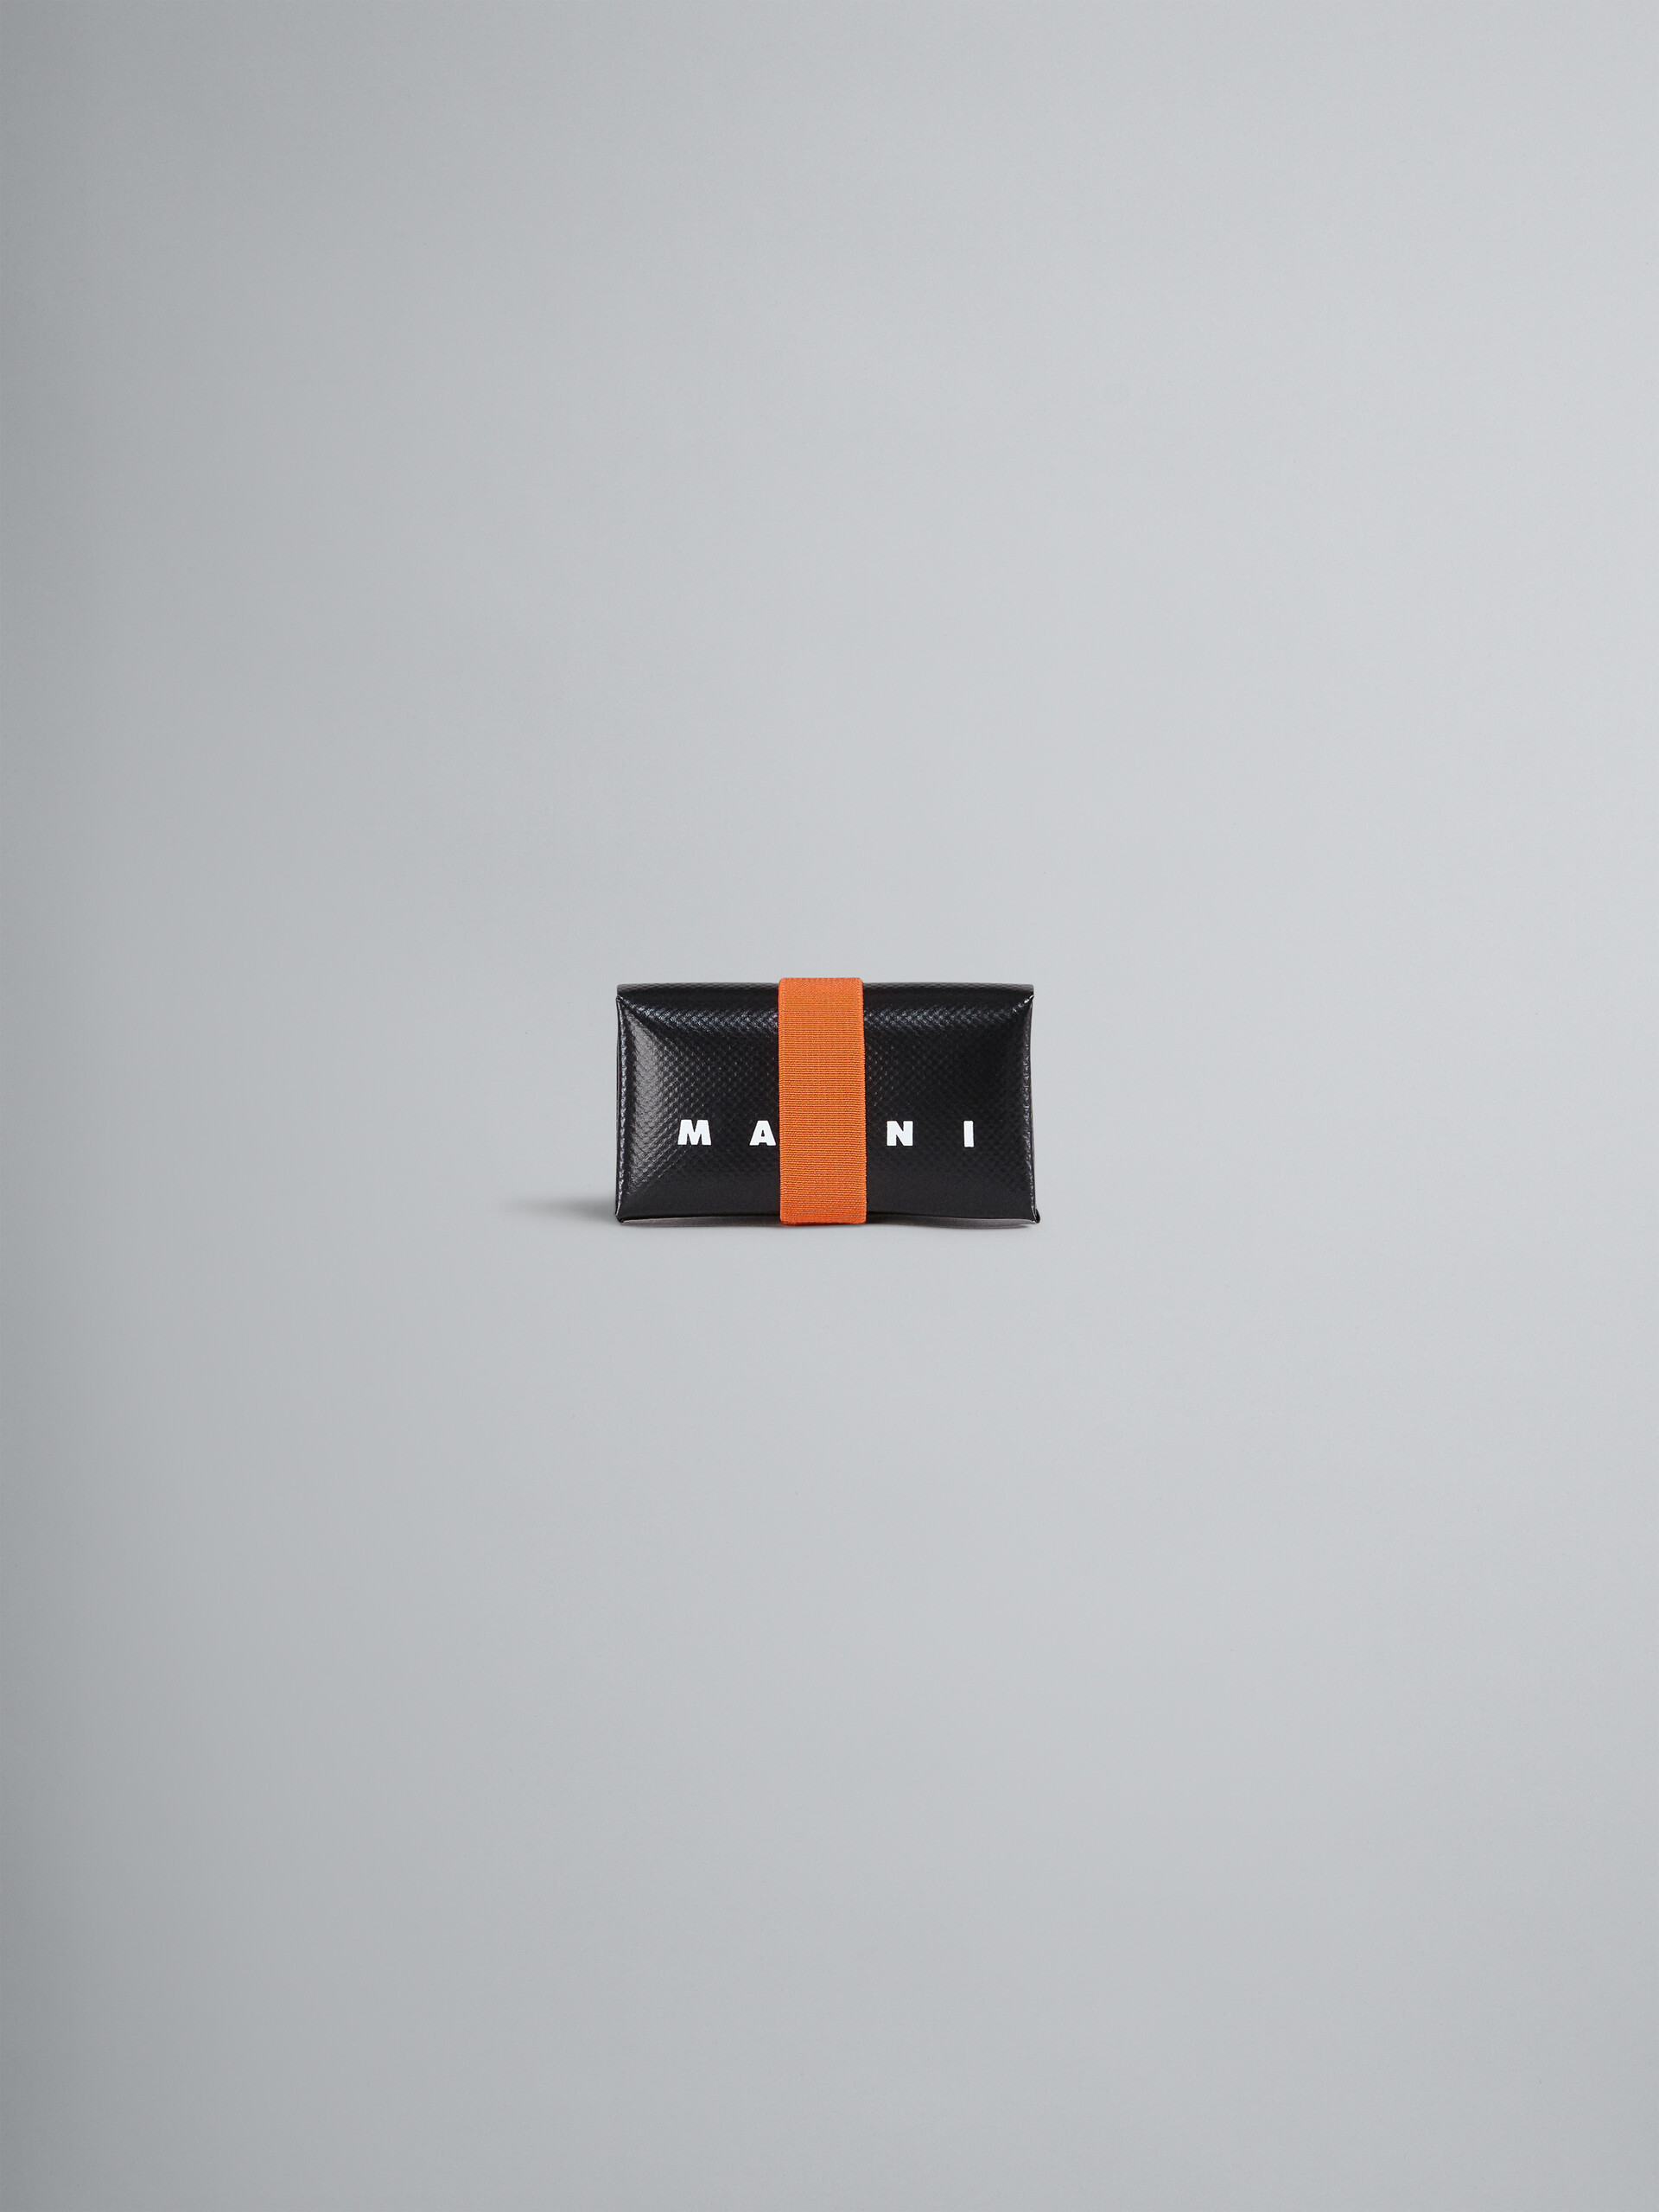 Portafoglio origami nero e arancio - Portafogli - Image 1